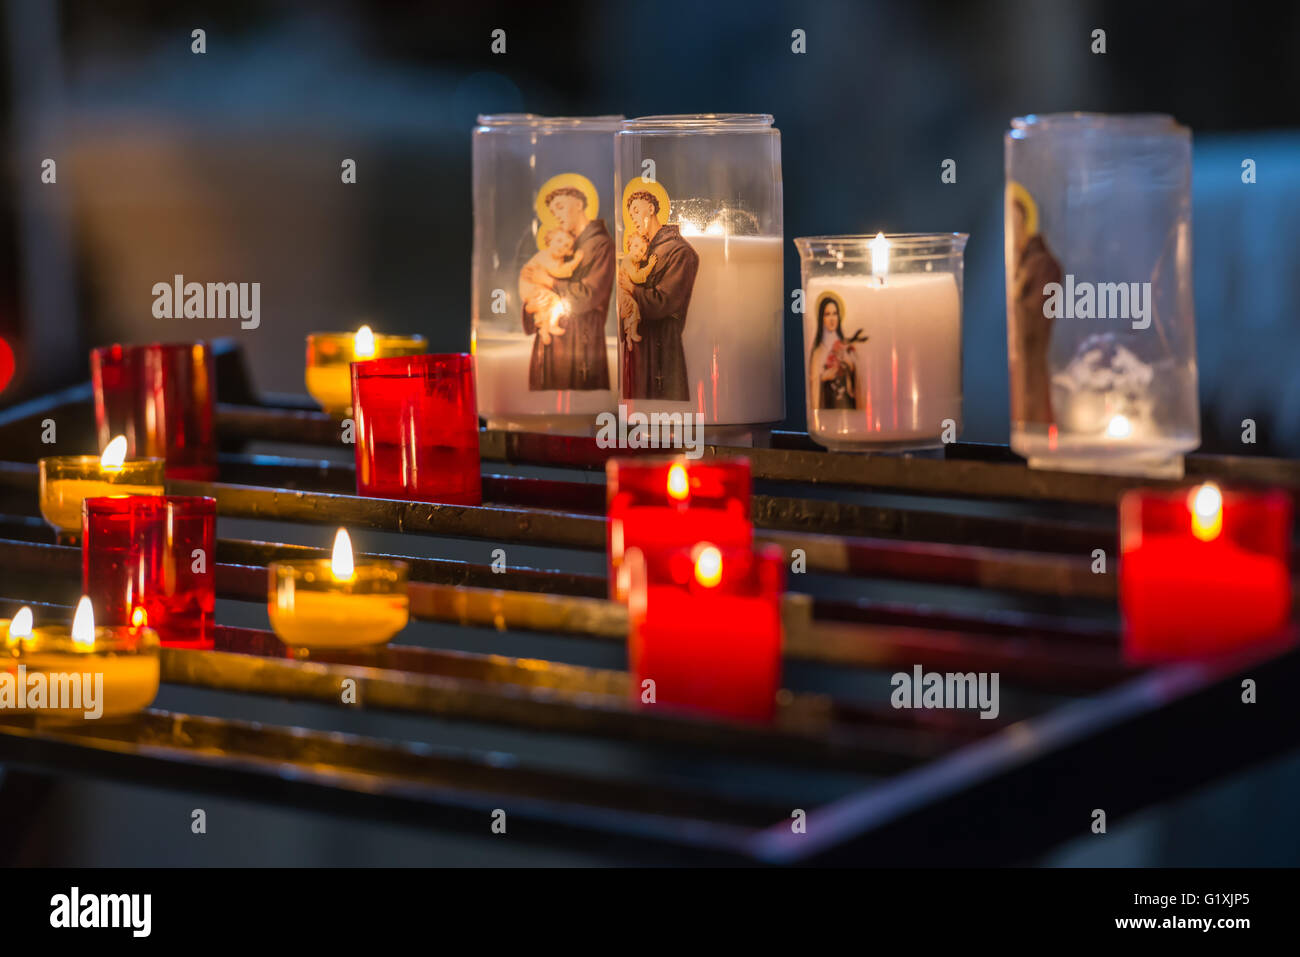 Messa a fuoco poco profonda immagine di candele colorate a cattedrale medievale altare Foto Stock